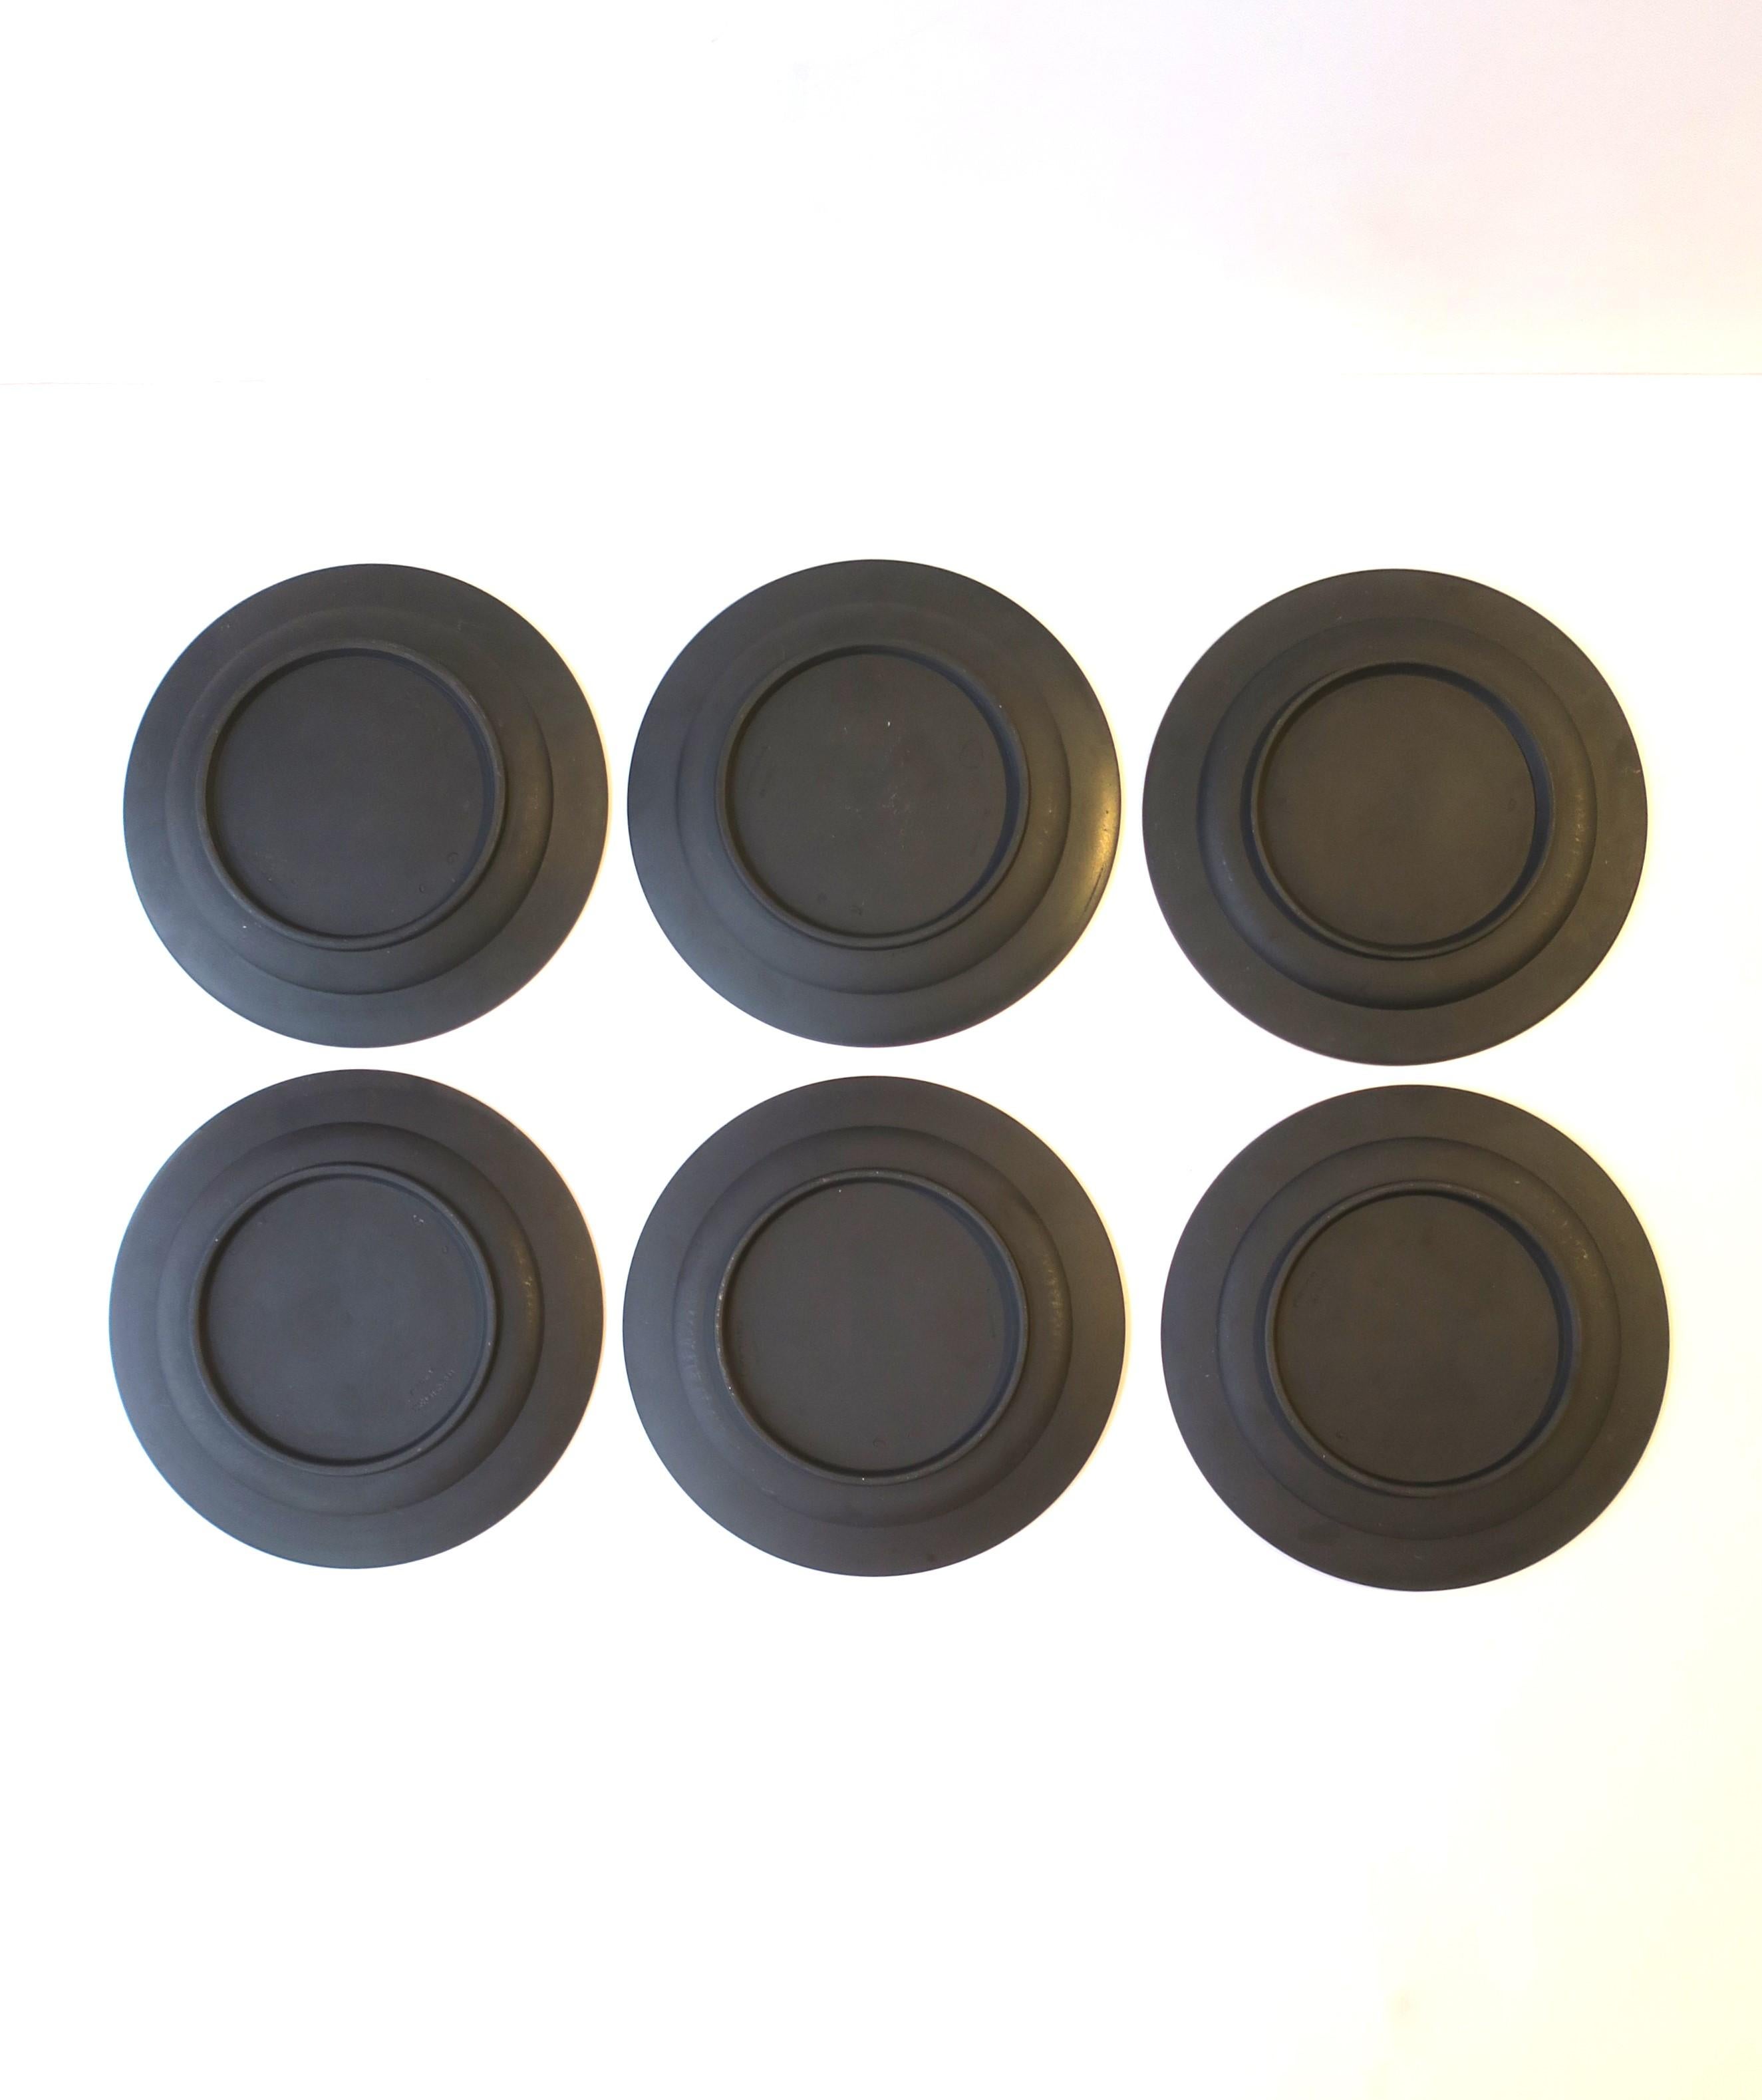 Unglazed Wedgwood Black Basalt Plates, Set of 6 For Sale